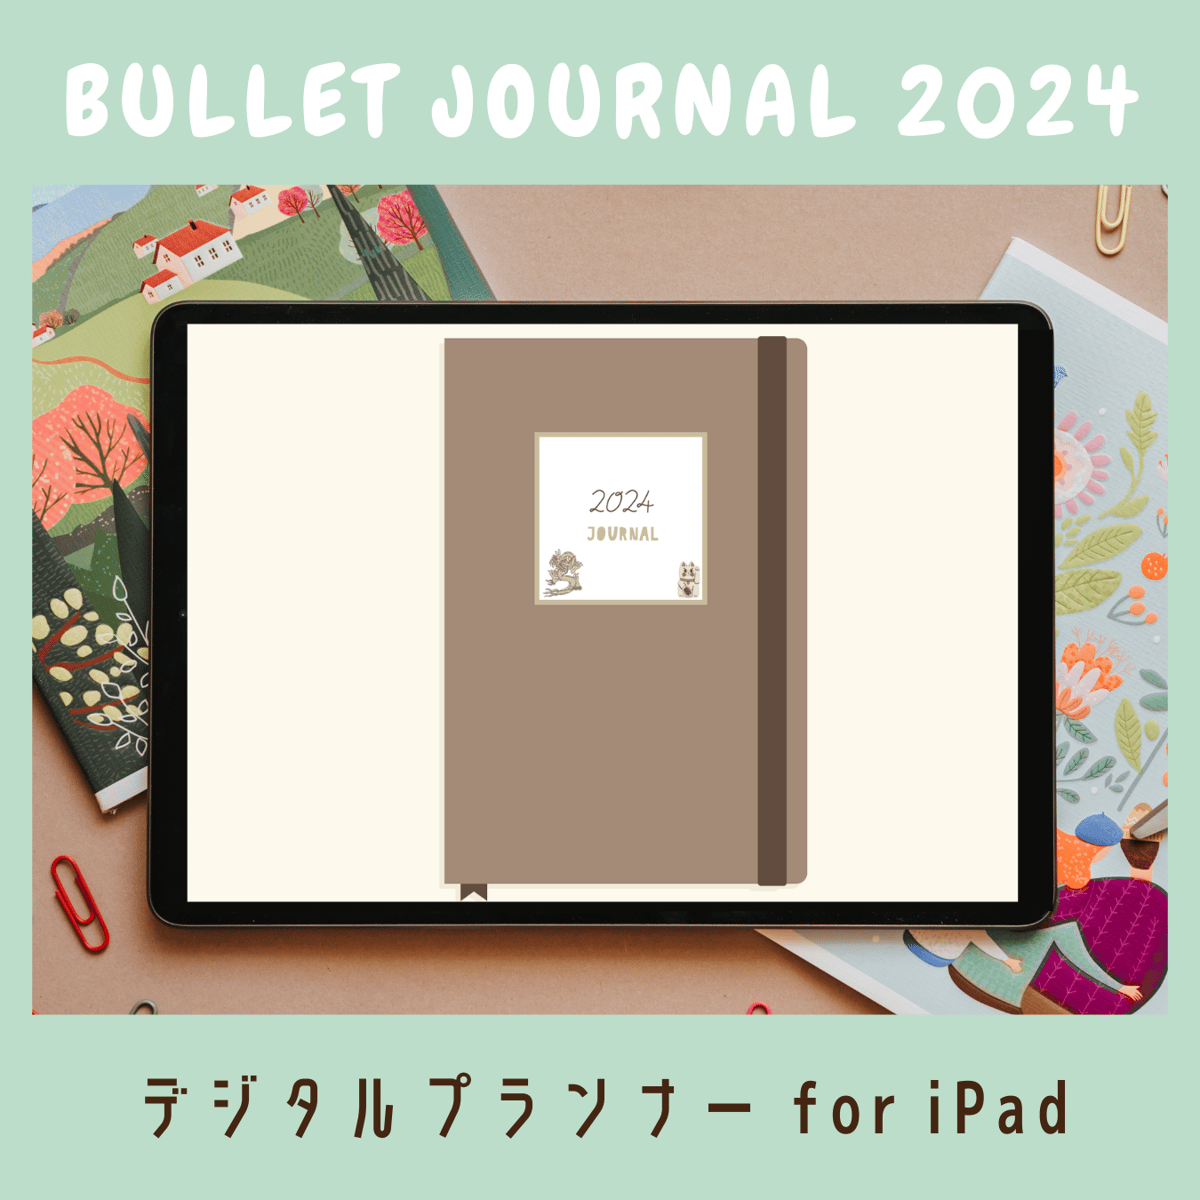 2024 Digital Bullet Journal – ForLittleLion